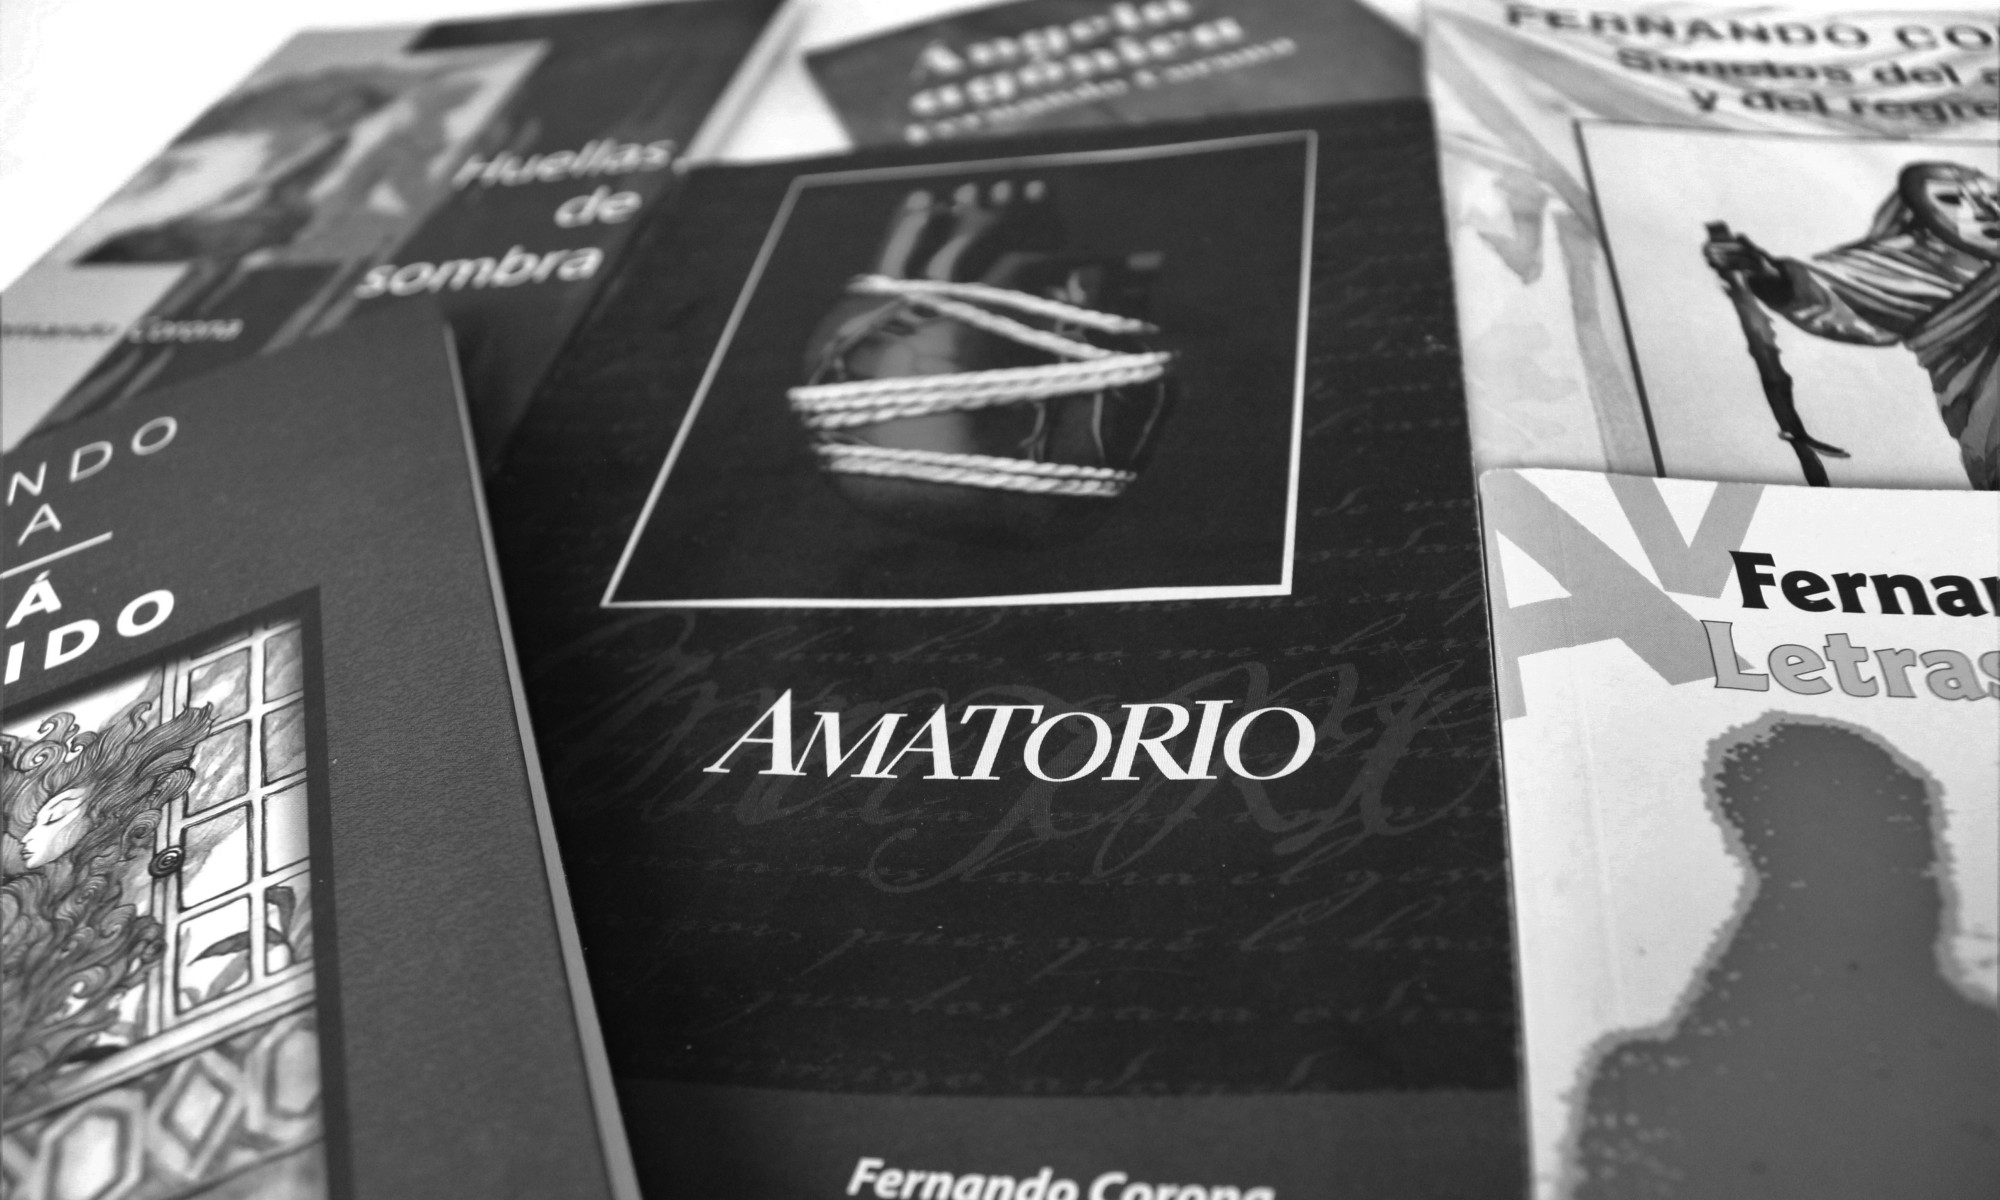 Portadas de libros, entre ellas la de «Amatorio» de Fernando Corona